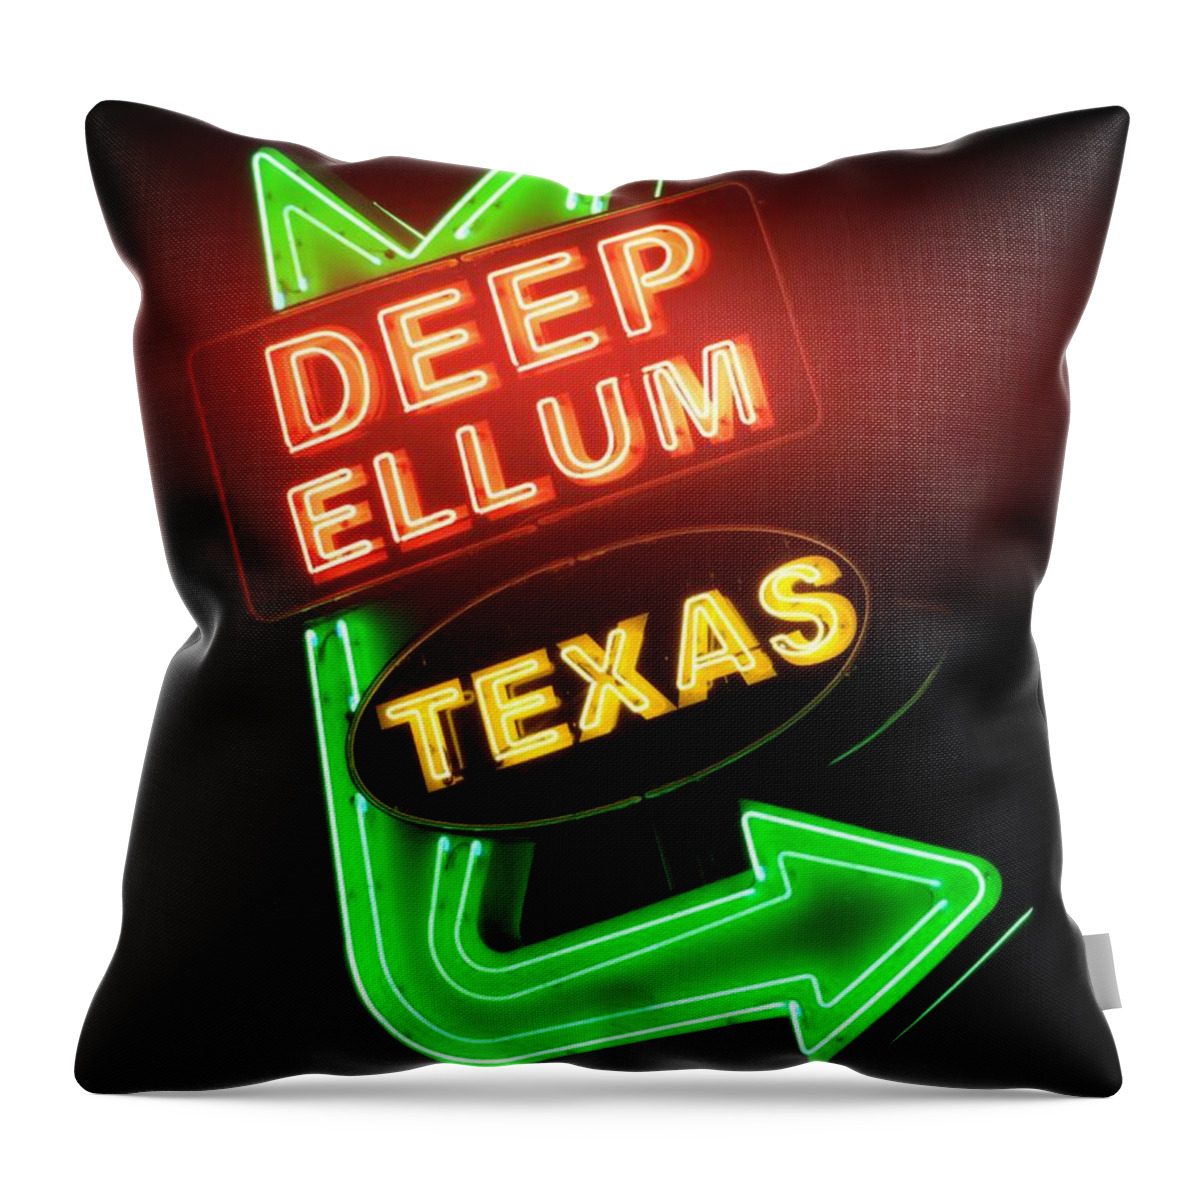 Deep Ellum Throw Pillow featuring the photograph Deep Ellum Red Glow by Robert ONeil